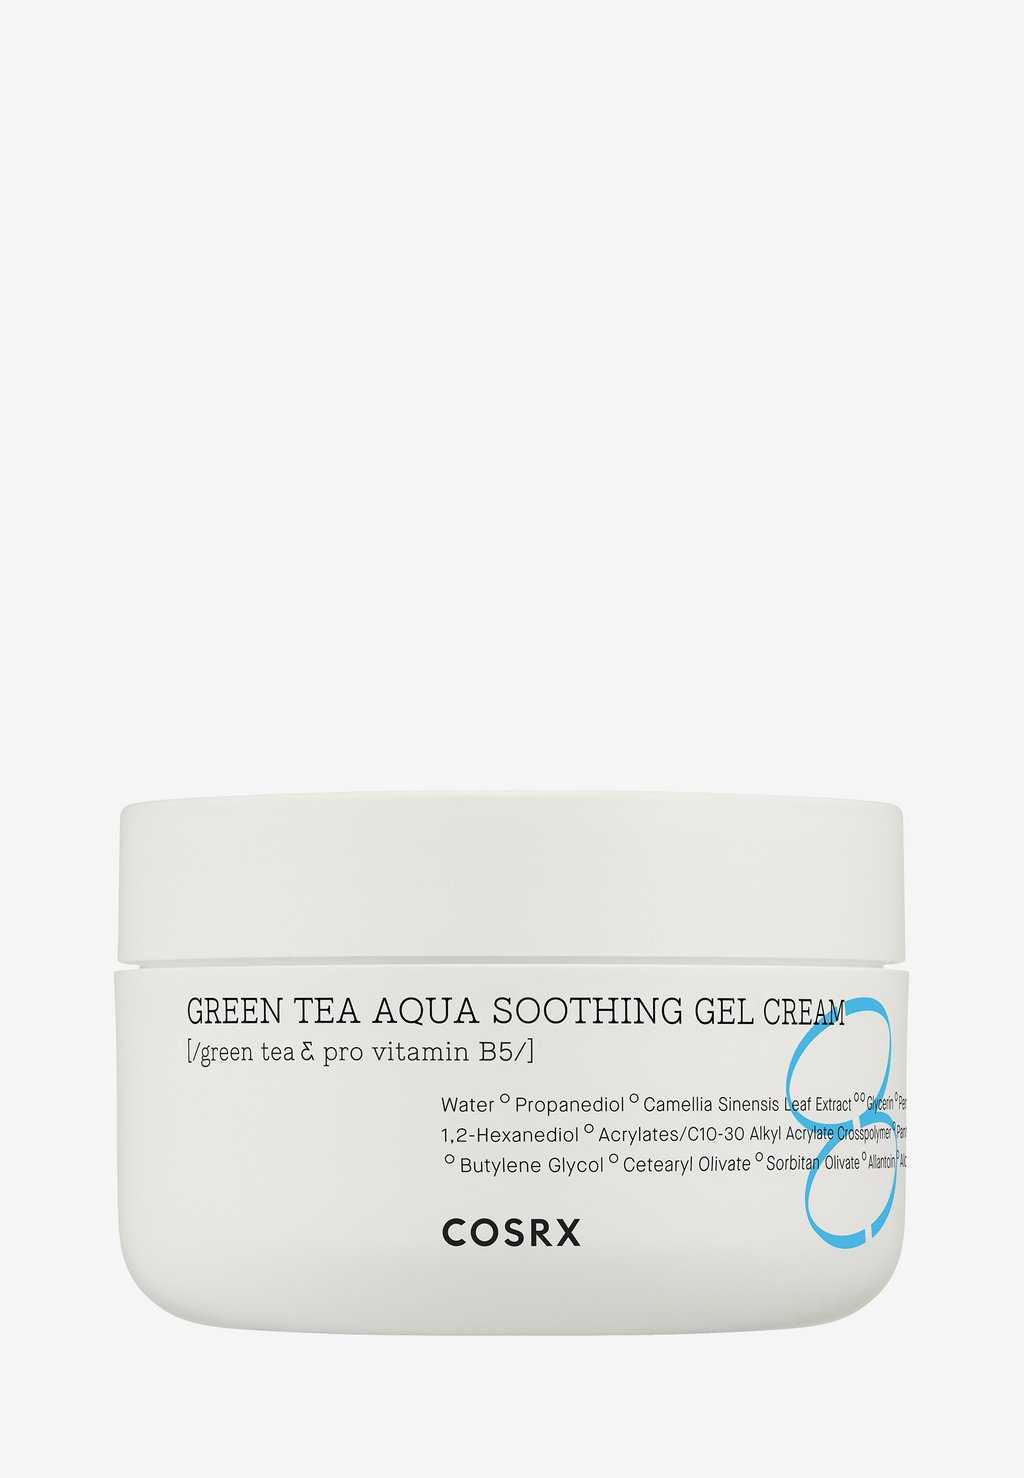 Дневной крем Green Tea Aqua Soothing Gel Cream COSRX cosrx hydrium green tea aqua soothing gel cream